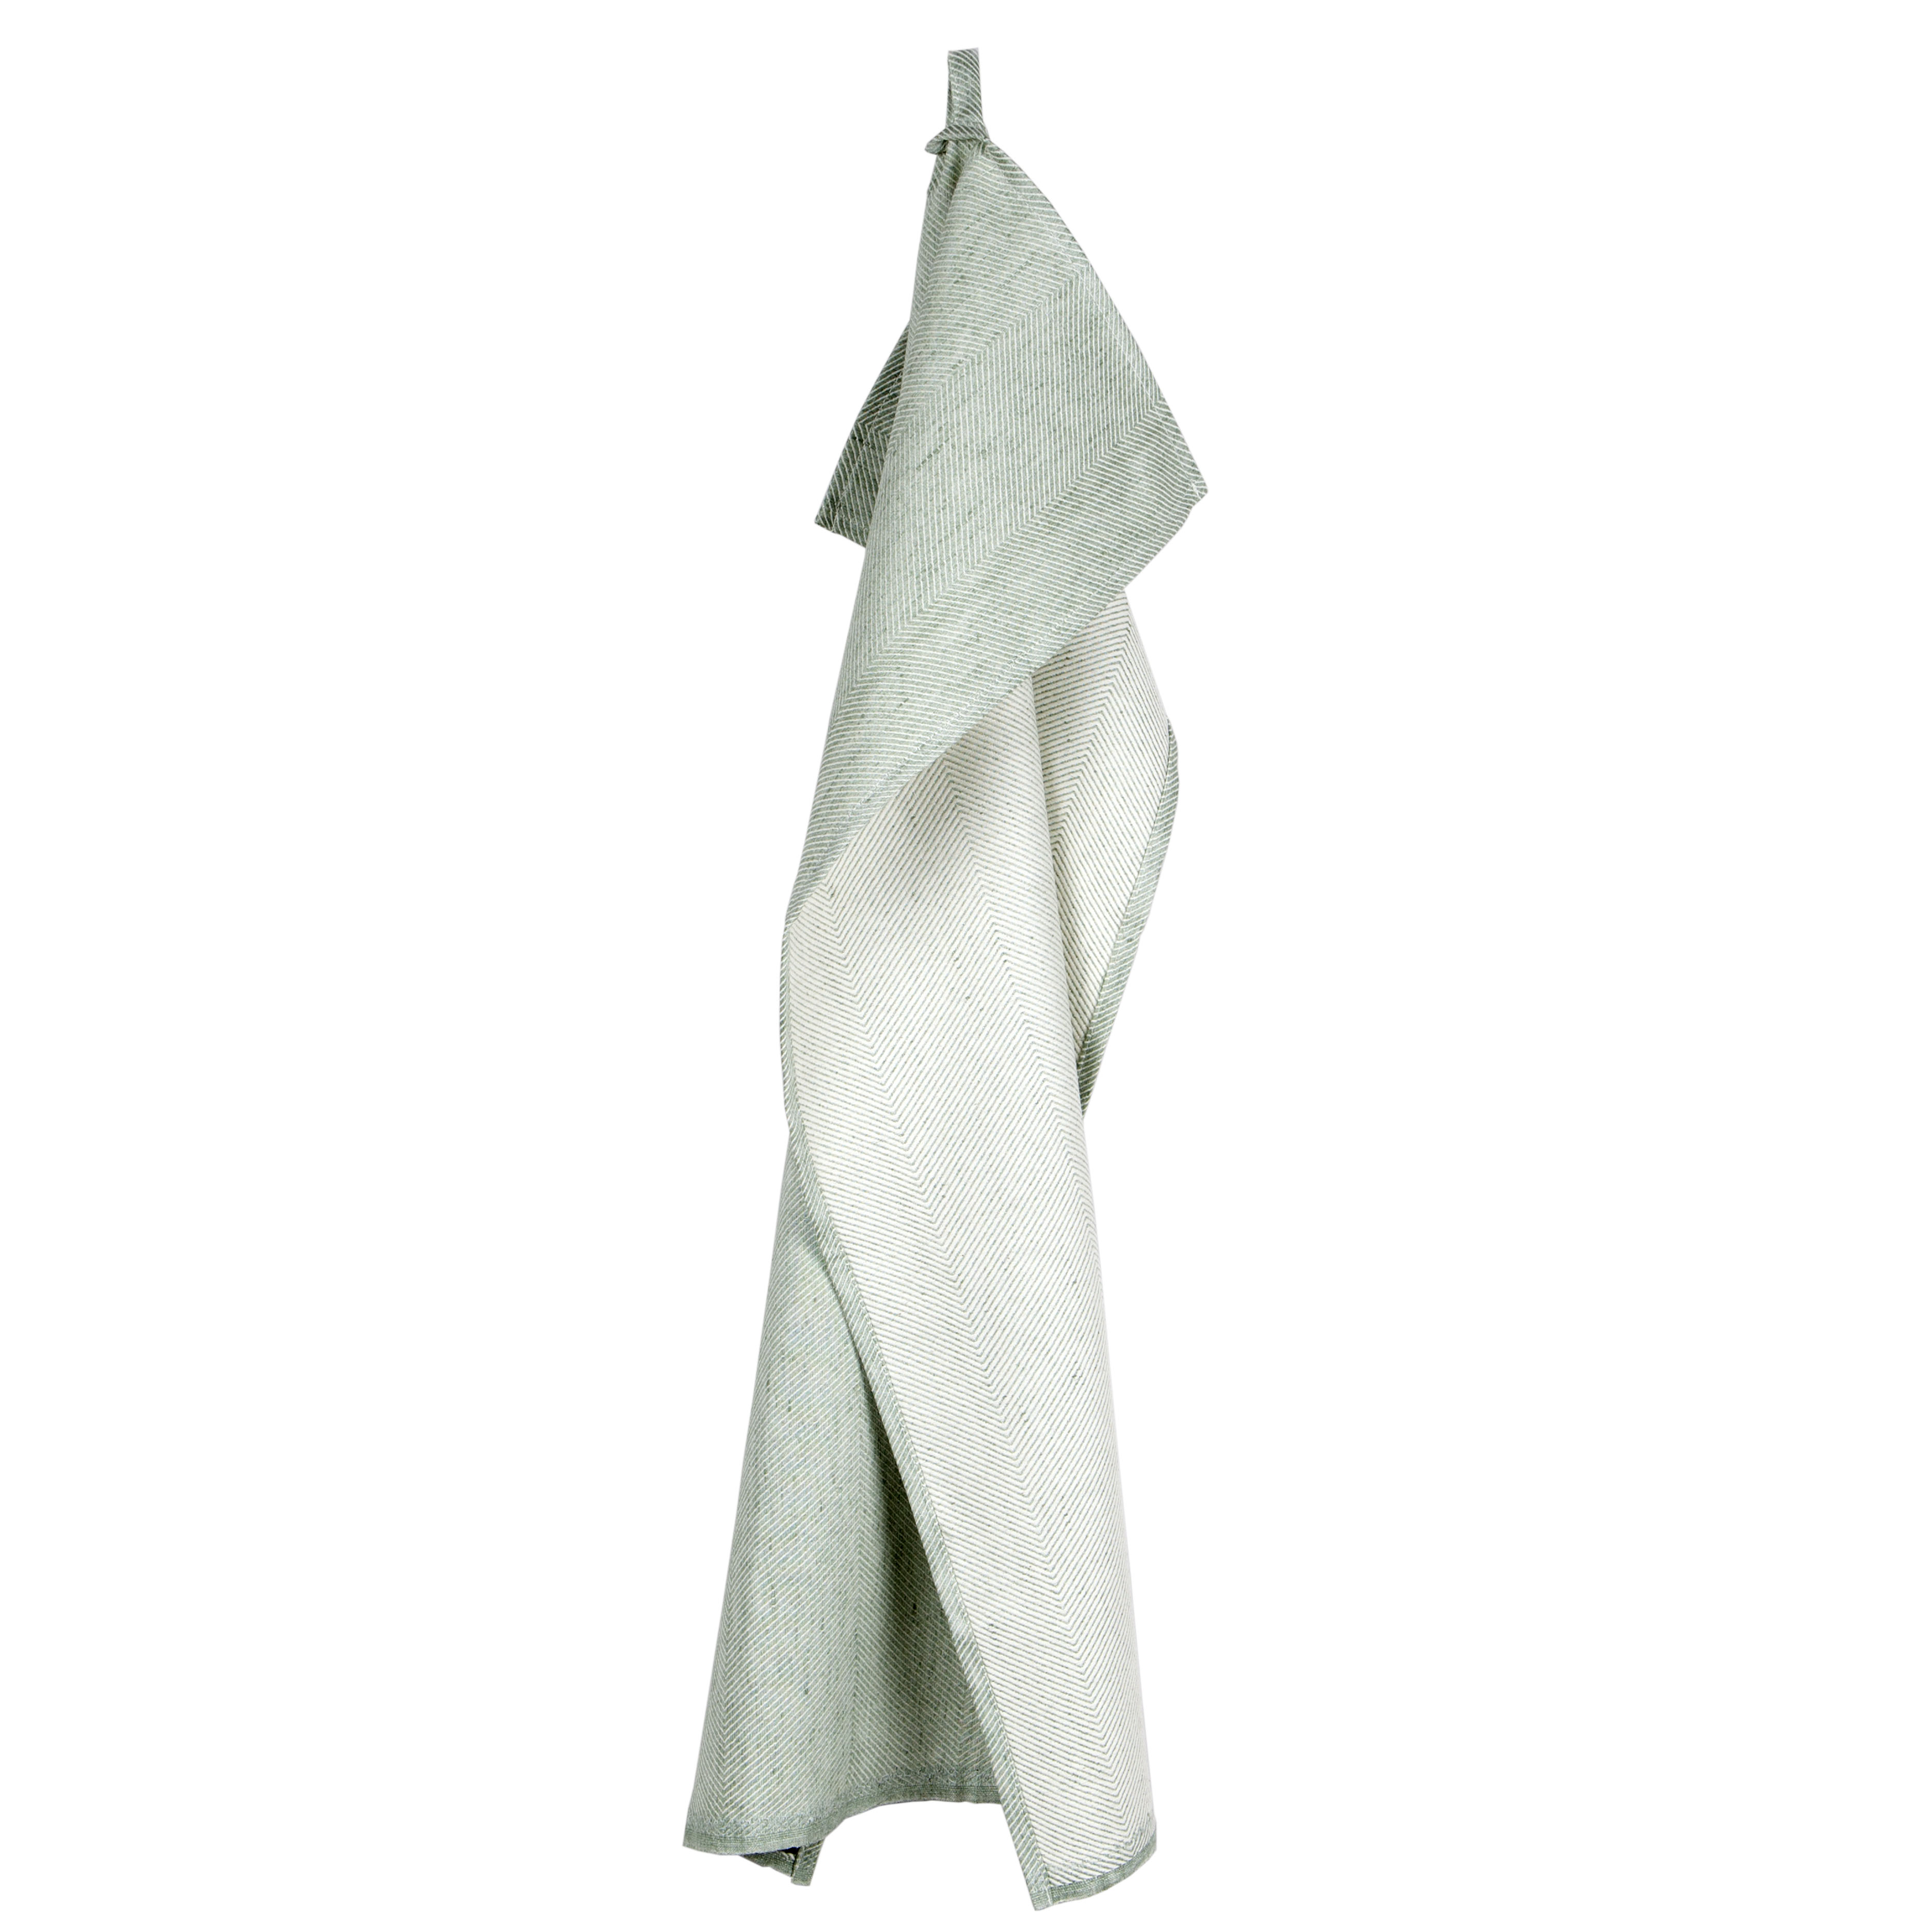 Tea towel, linen/cotton, aqua green, design by Anne Rosenberg, RosenbergCph